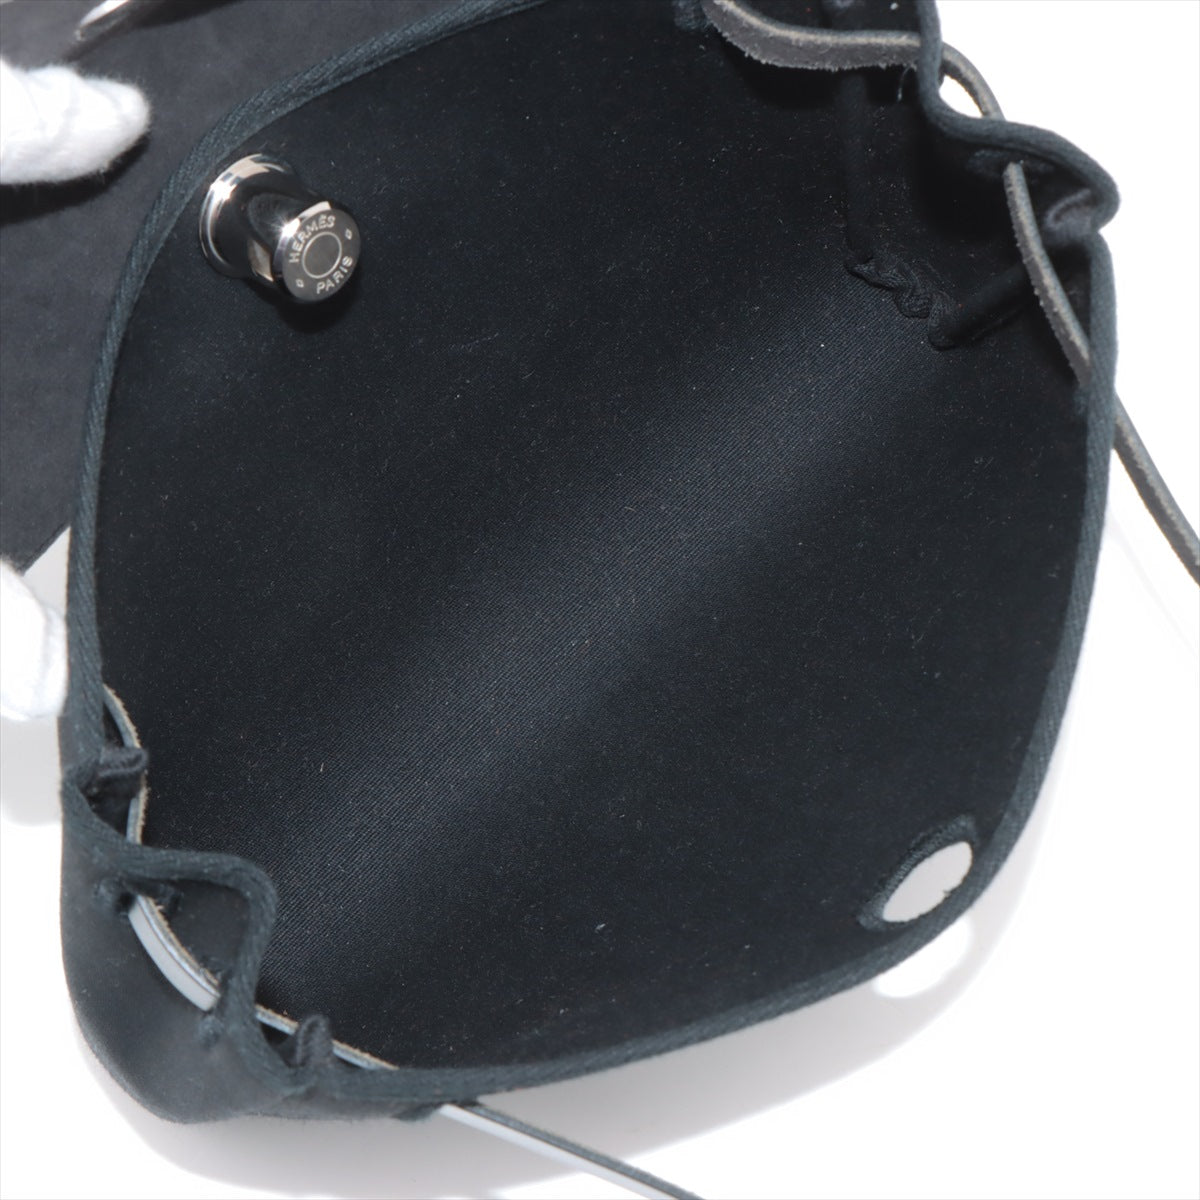 エルメス エールバッグクラッチ トワルオフィシエ×カーフレザー ブラック シルバー金具 □H:2004年 替えバッグ付き